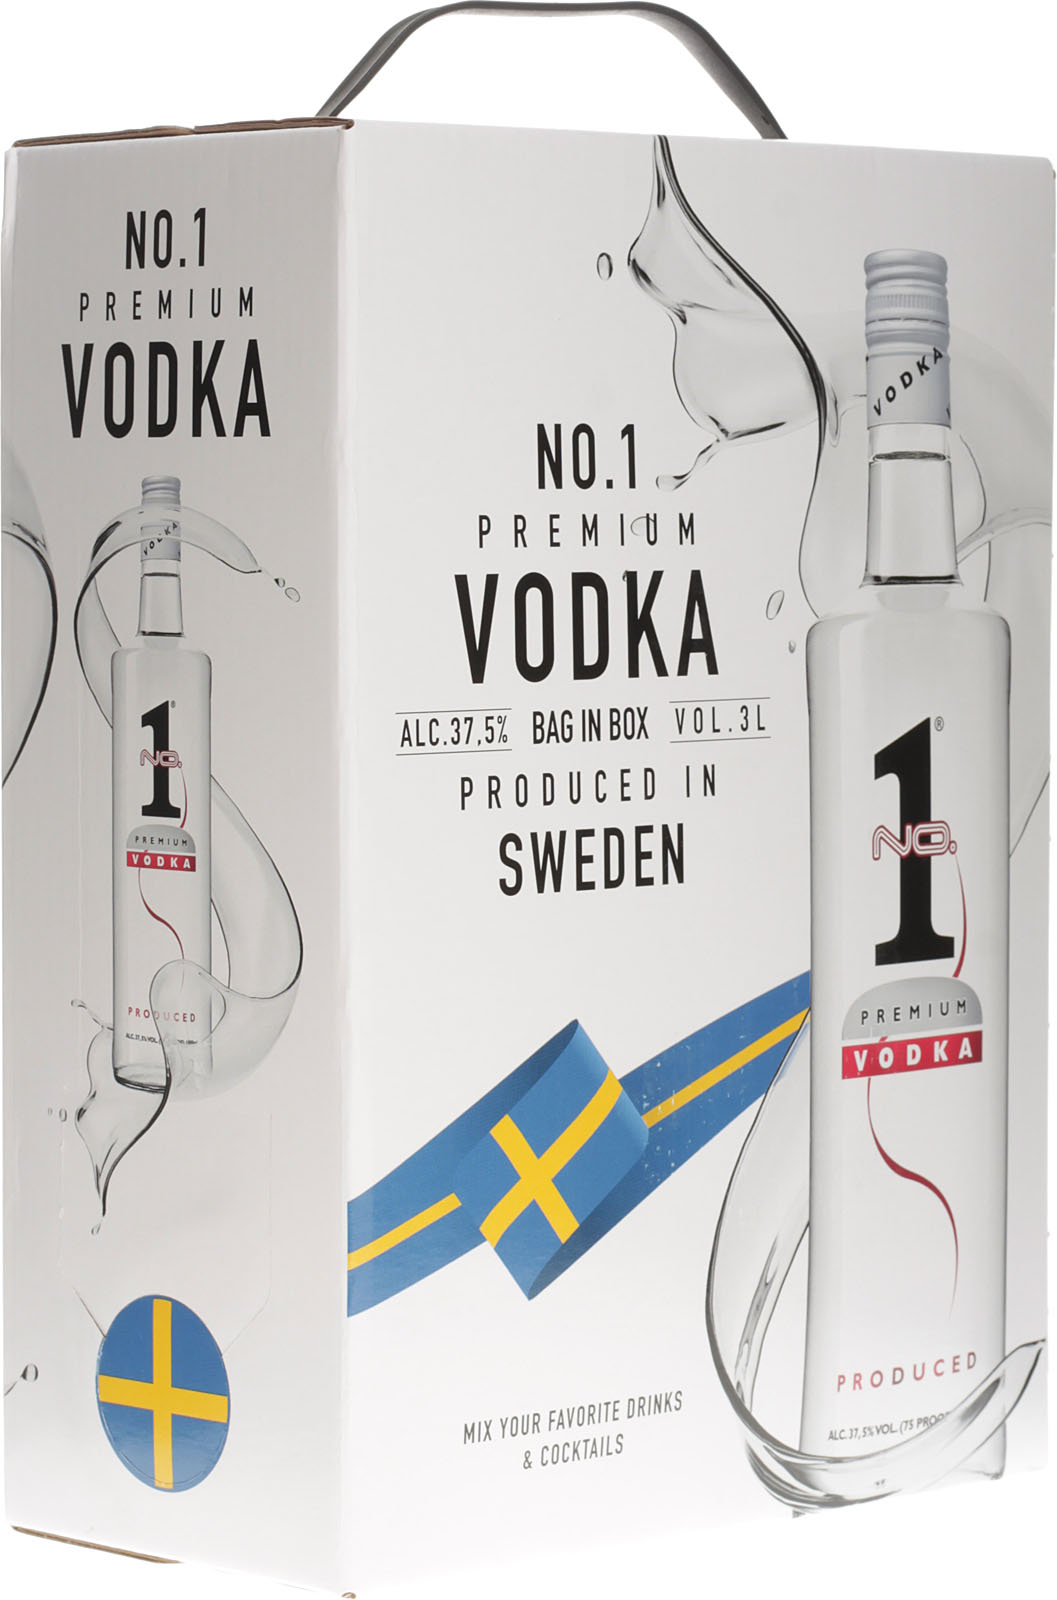 Liter bei Box Vodka 1 Vol. Premium % in Bag 37,5 No. 3